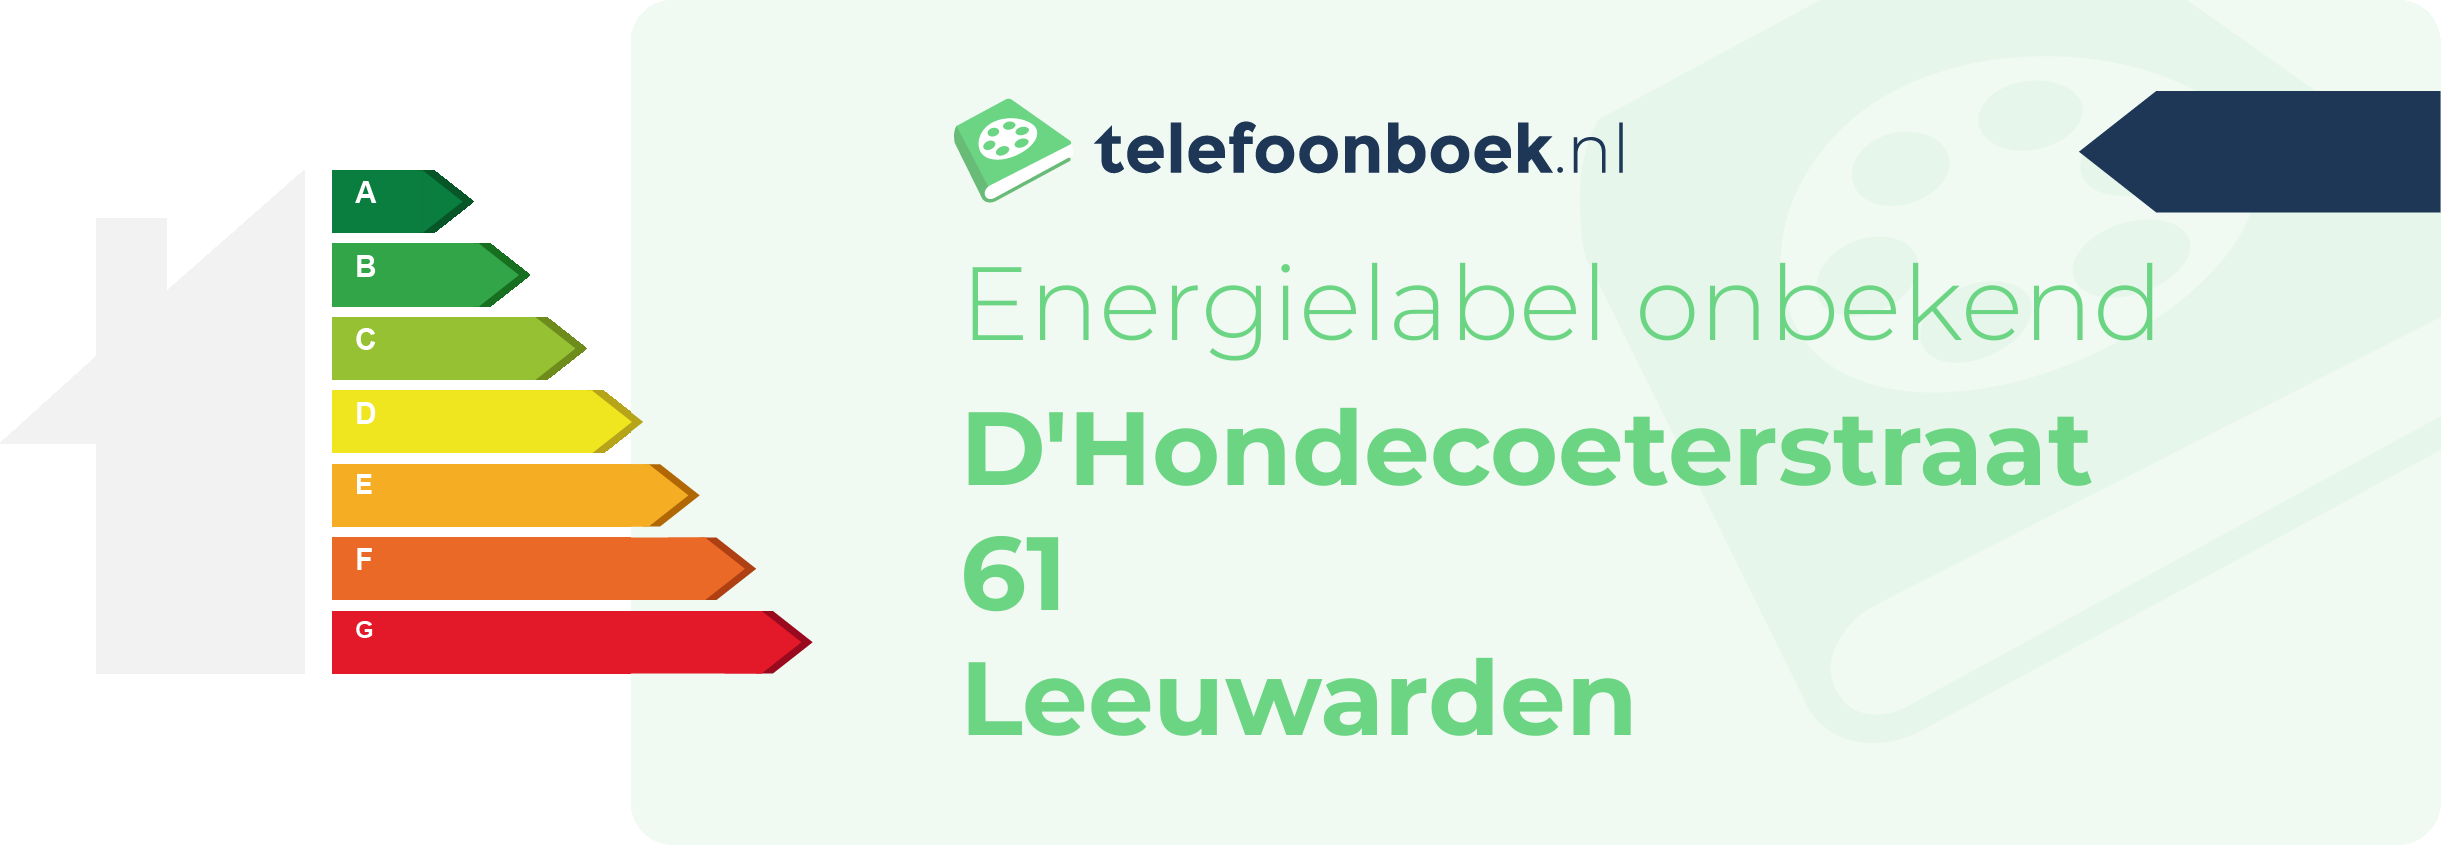 Energielabel D'Hondecoeterstraat 61 Leeuwarden